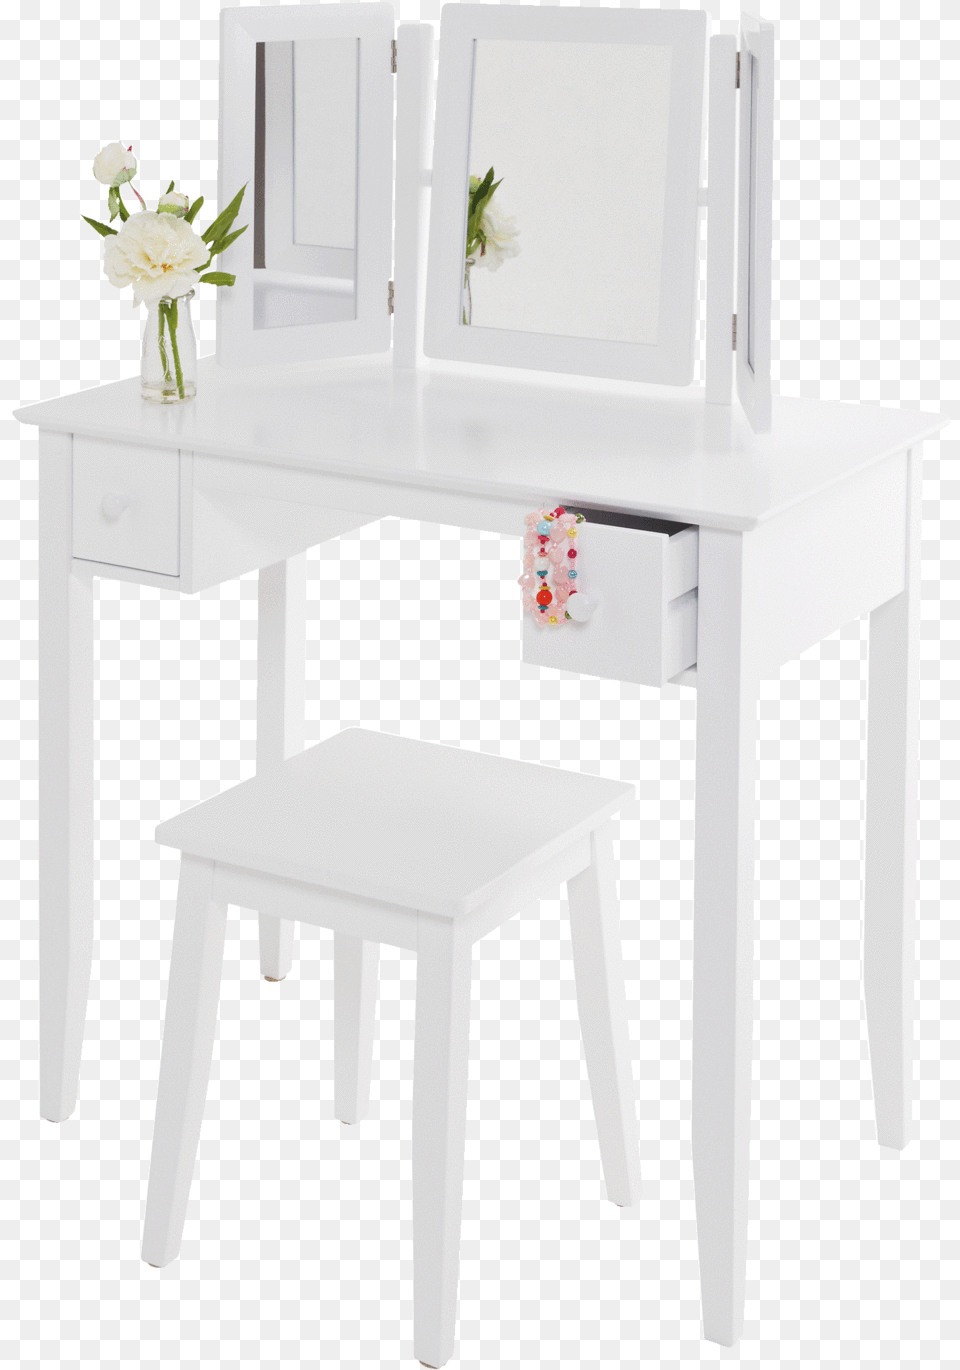 Charlotte Dressing Table Amp Stool Set Sofa Tables, Desk, Furniture, Flower, Plant Png Image